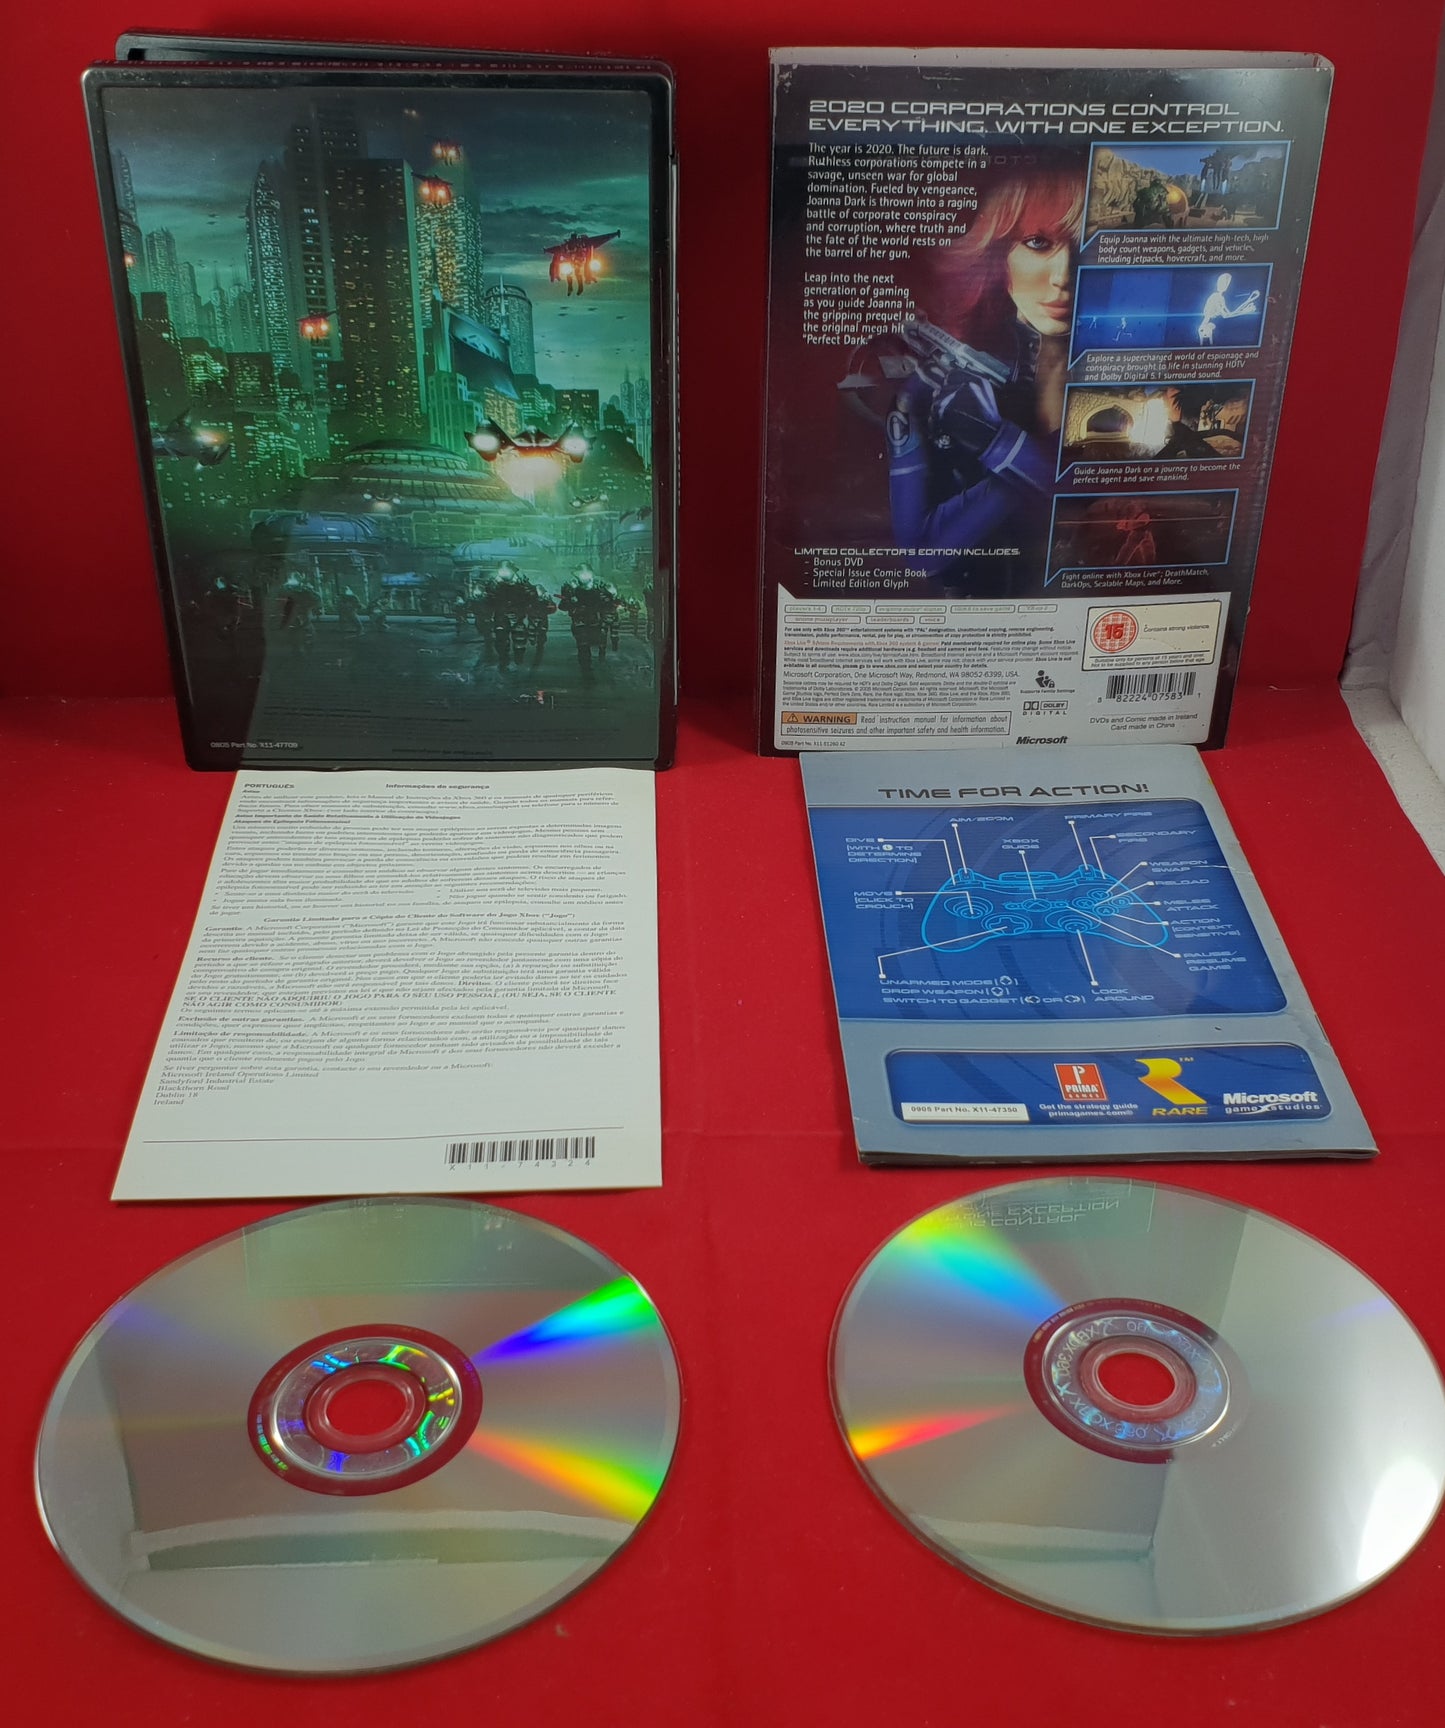 Perfect Dark Zero Limited Collector's Edition Microsoft Xbox 360 Game